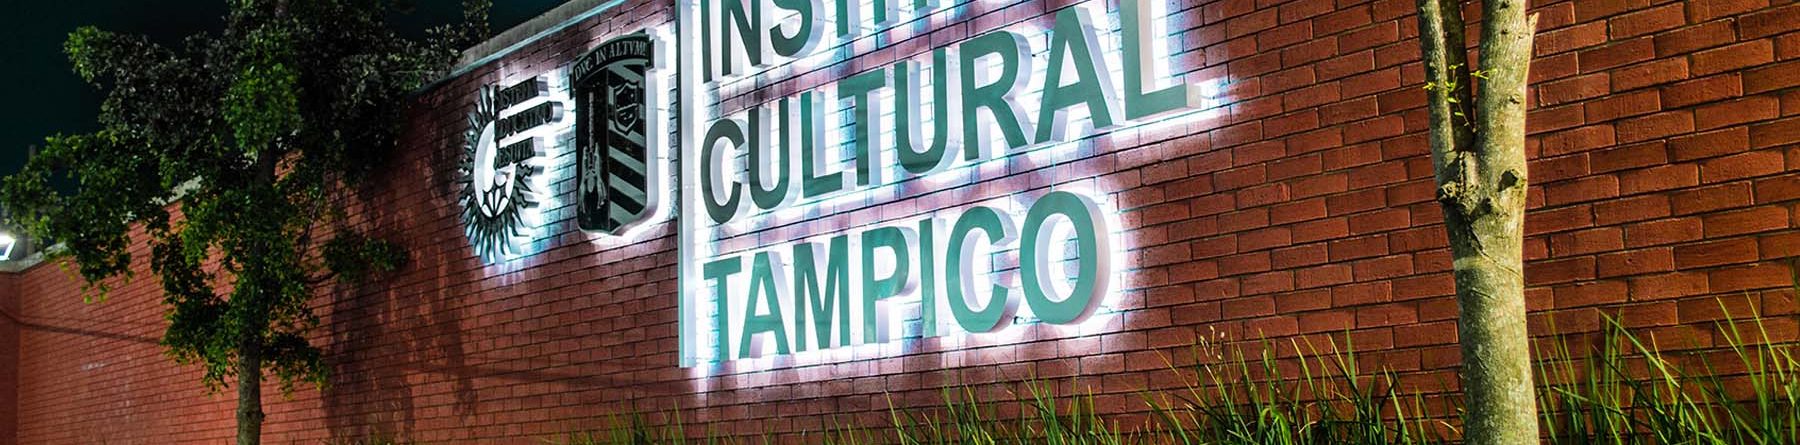 Instituto Cultural Tampico